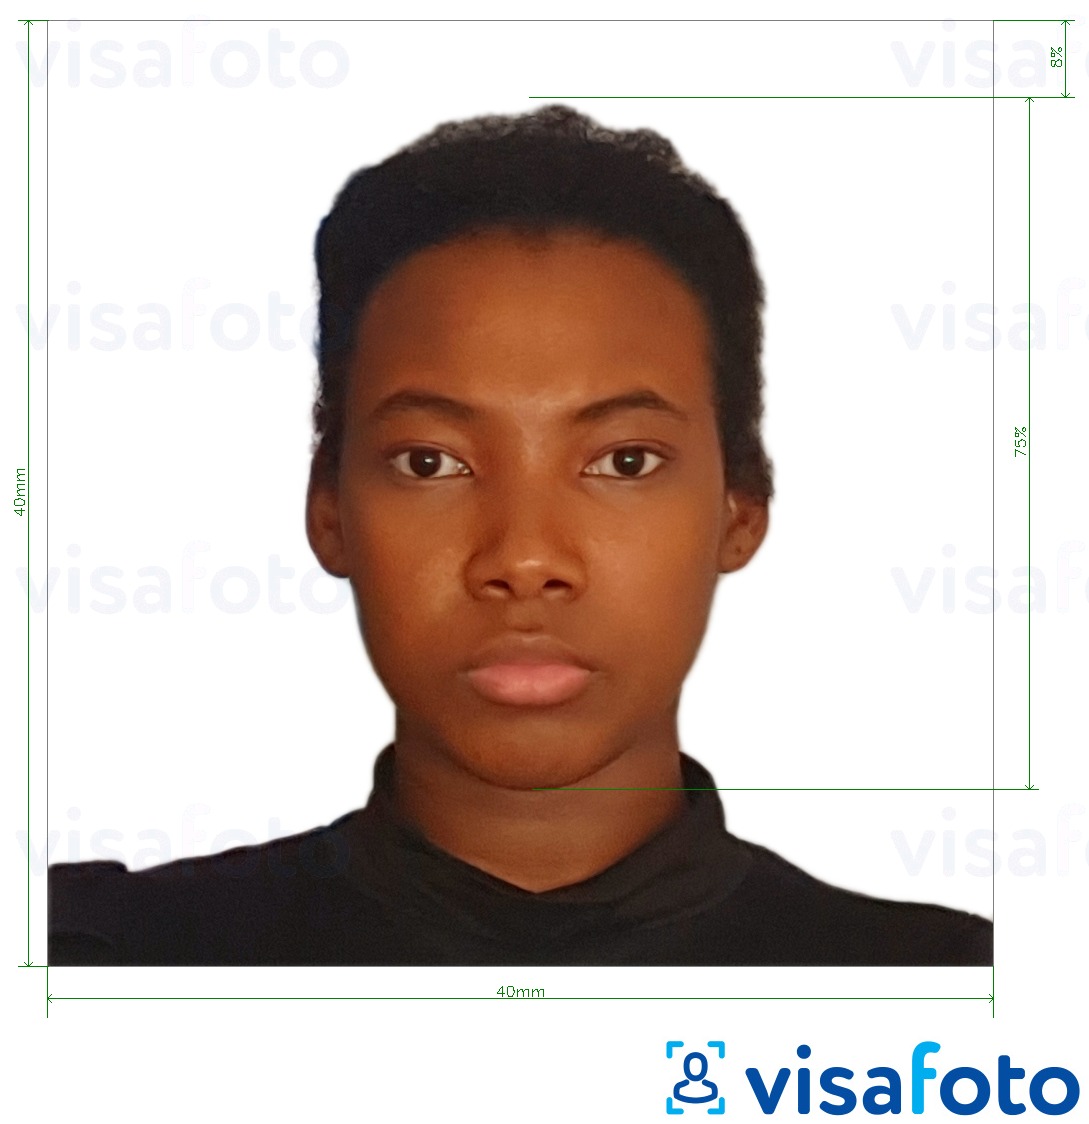 Ejemplo de foto para Pasaporte camerunés 4x4 cm (40x40 mm) con la especificación del tamaño exacto